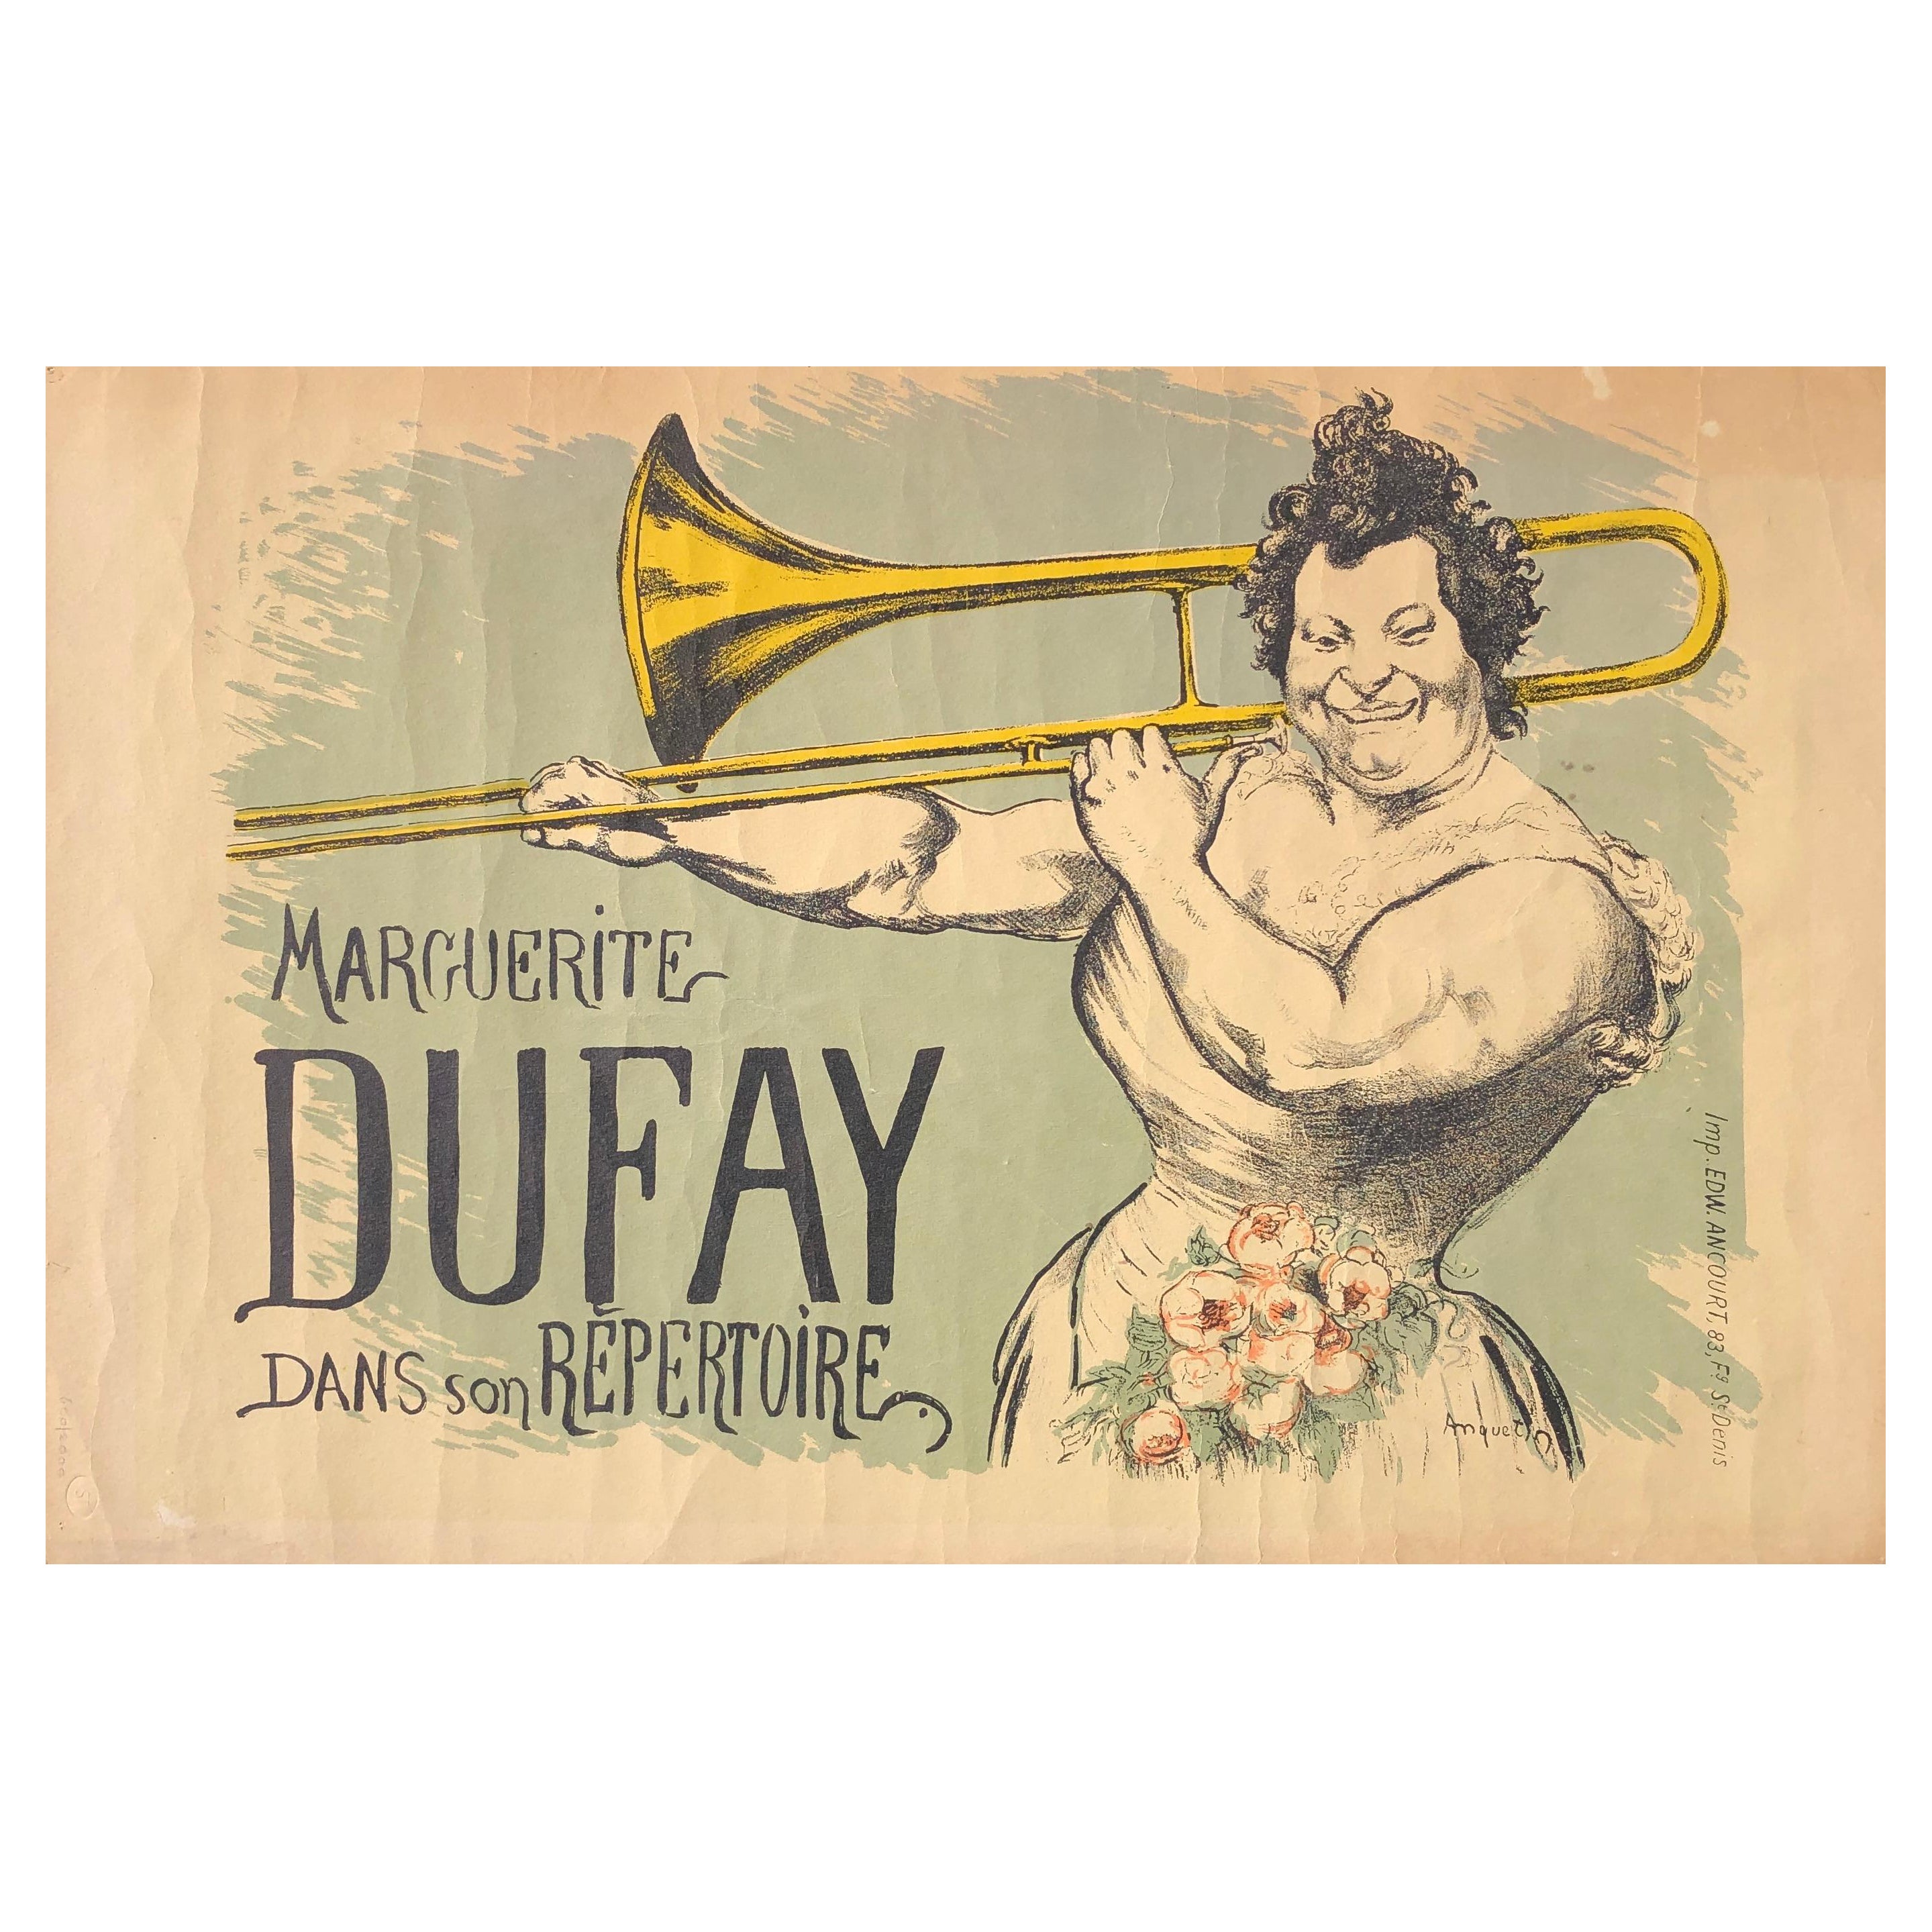 Marguerite Dufay – lithografisches Jugendstilplakat im Vintage-Stil von Louis Anquetin